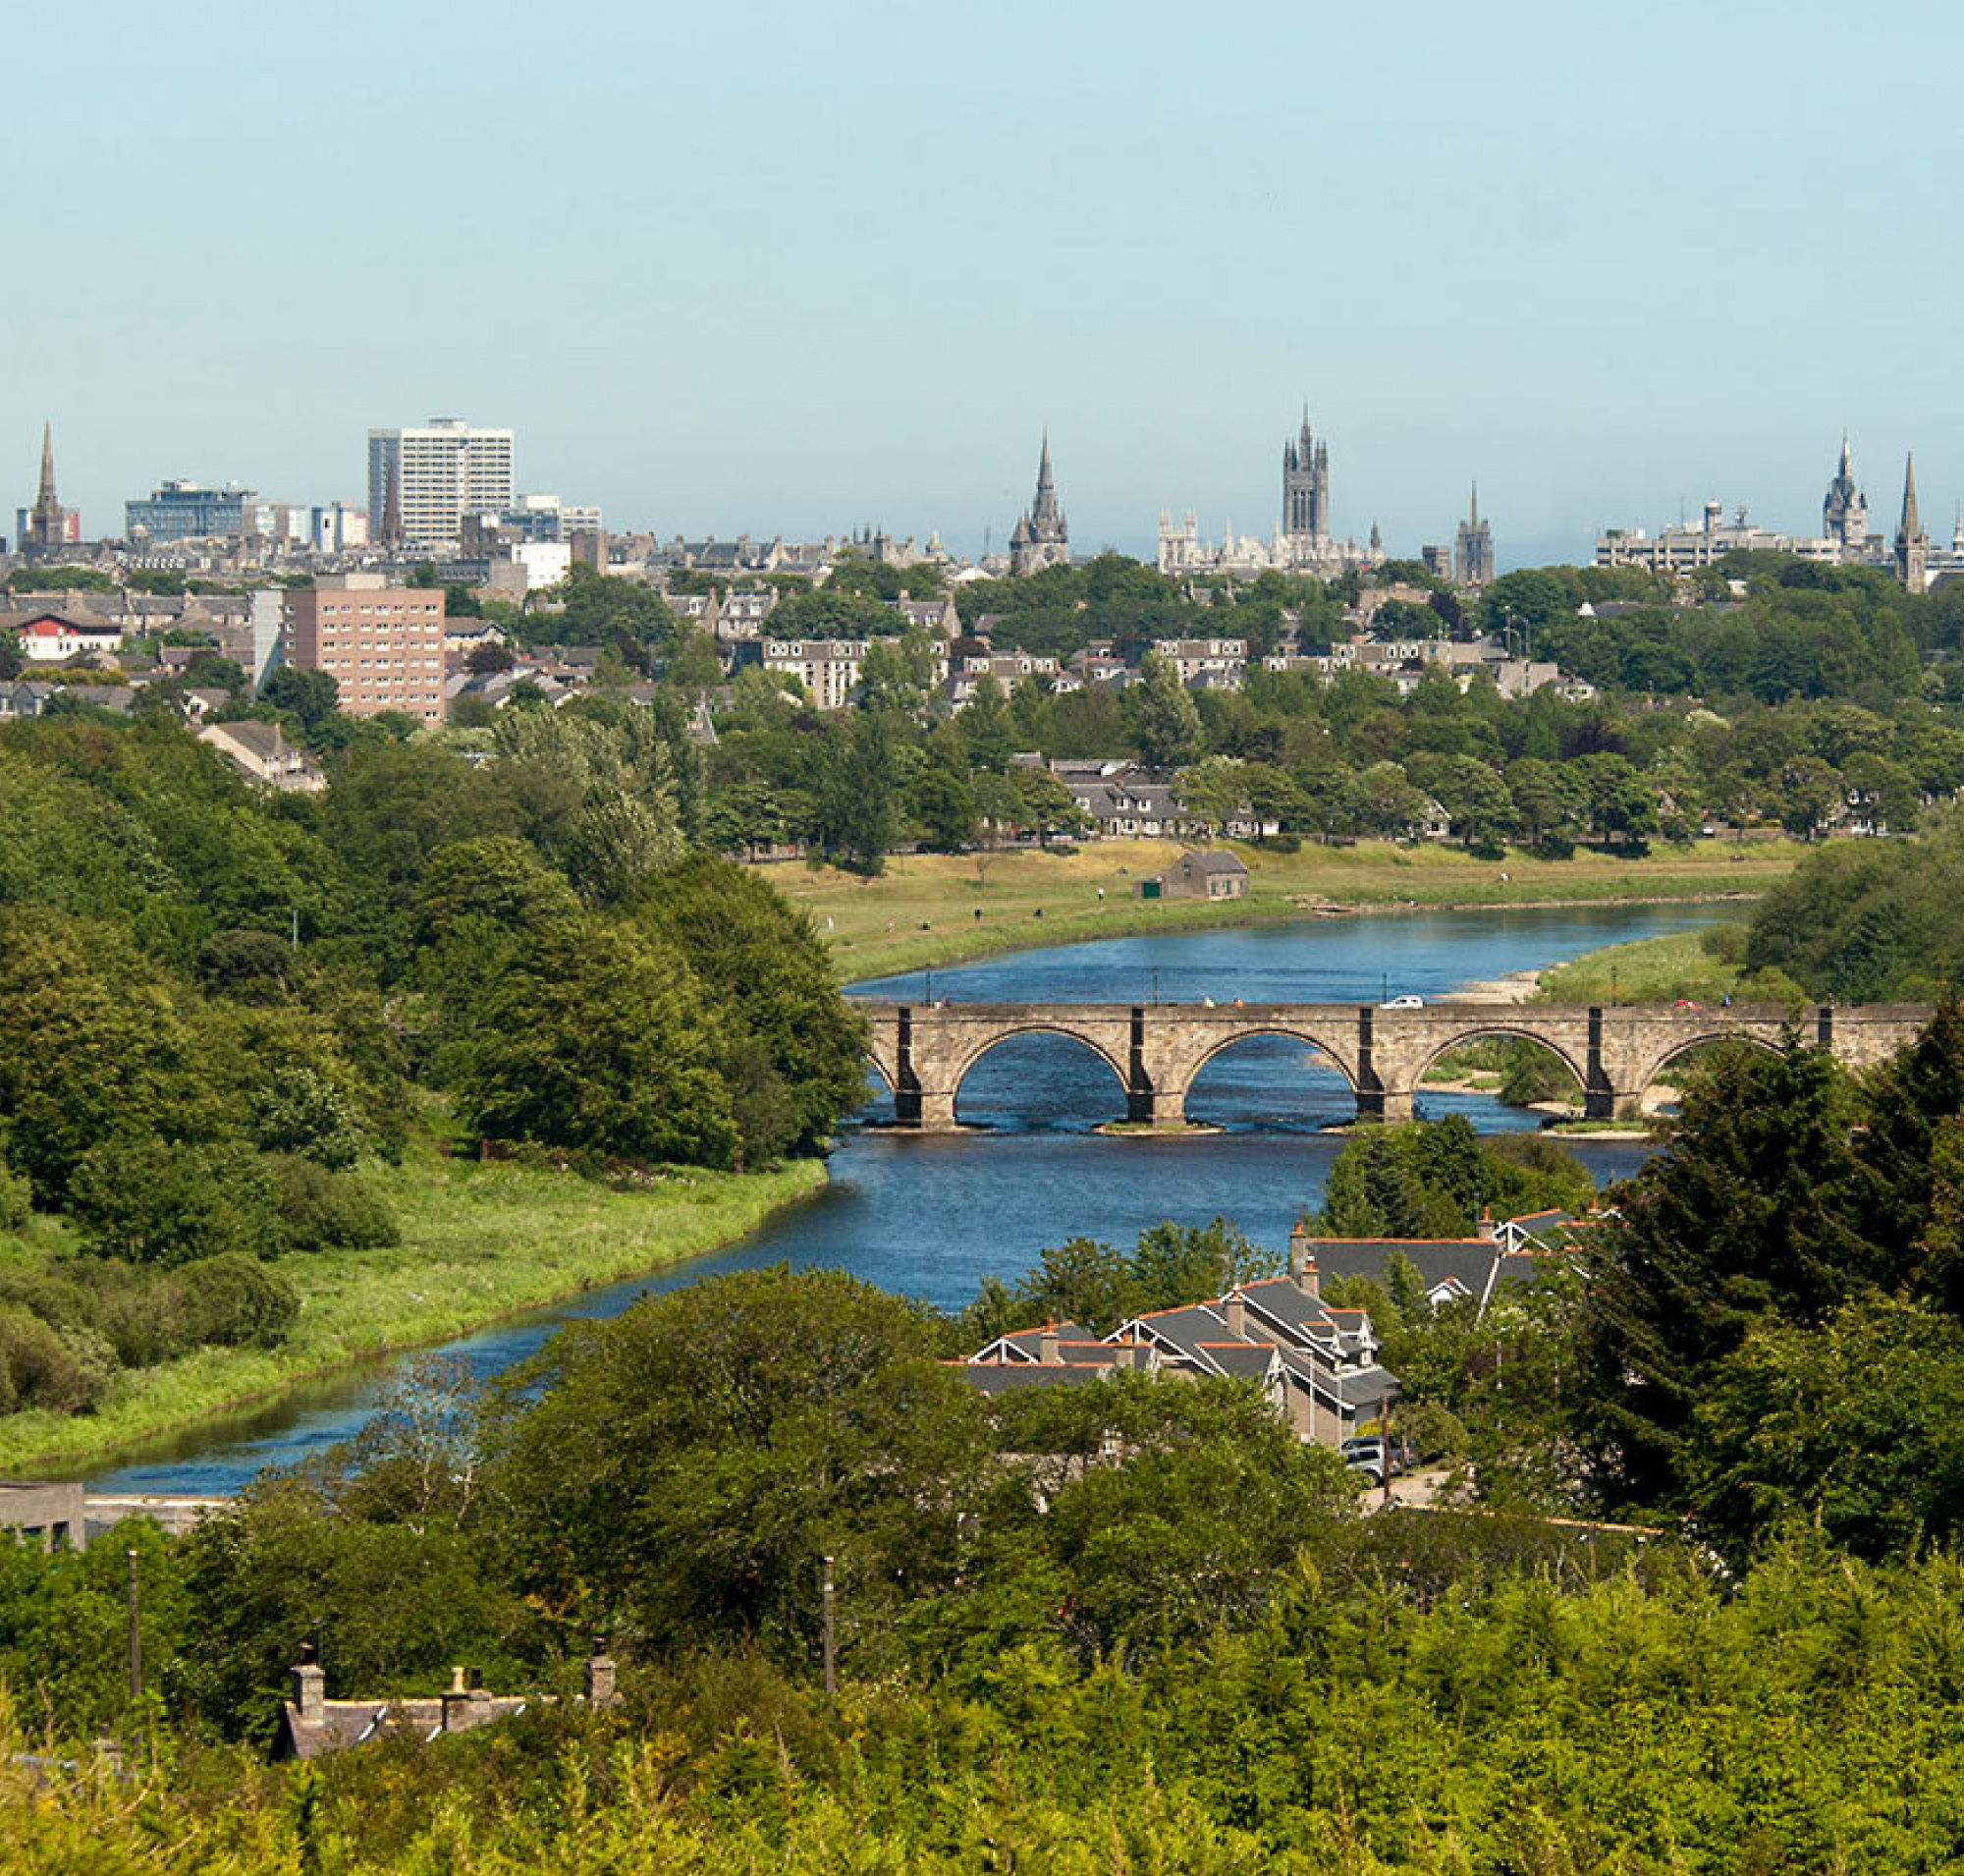 Pogled iz vazduha na grad sa kamenim mostom koji prelazi reku, okružen zelenilom i mešavinom modernog 